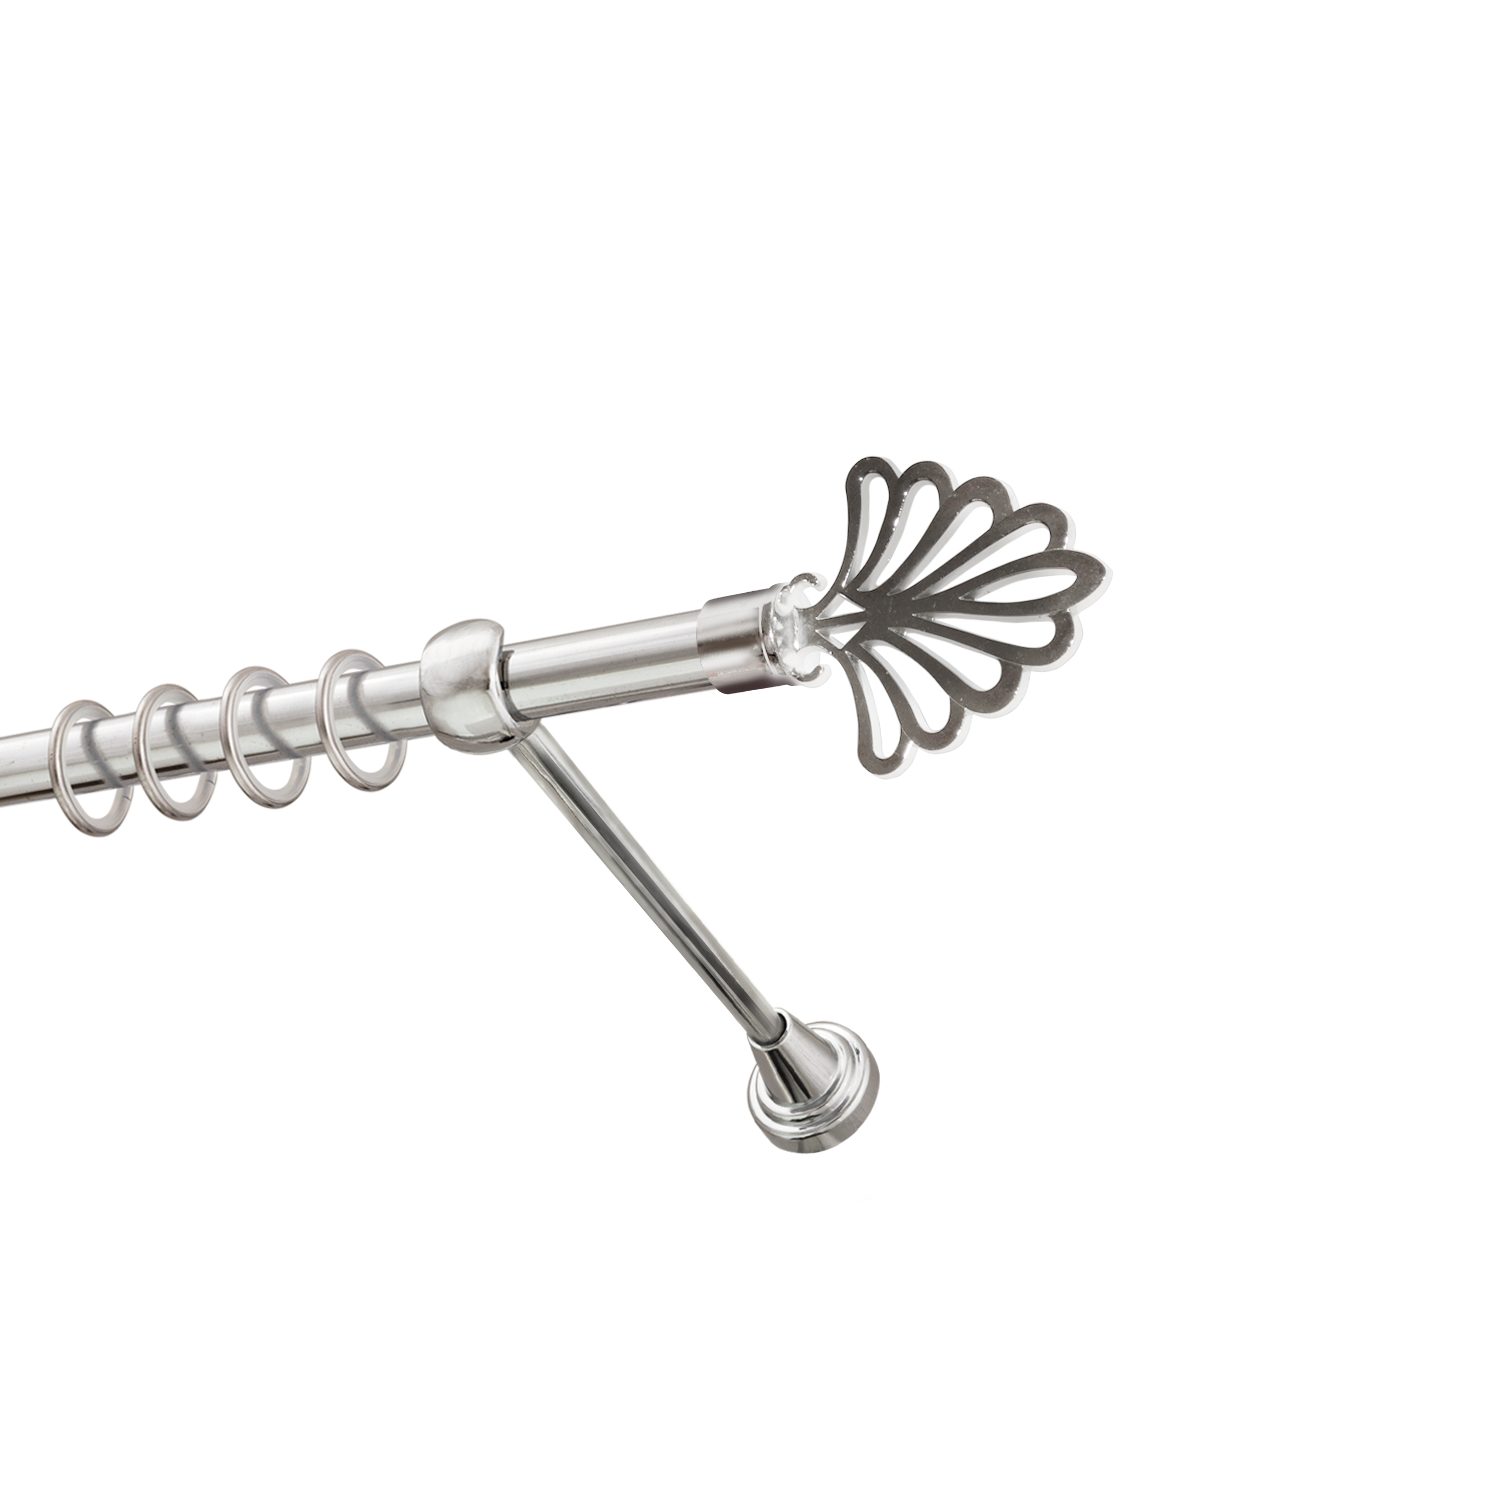 Металлический карниз для штор Бутик, однорядный 16 мм, серебро, гладкая штанга, длина 160 см - фото Wikidecor.ru